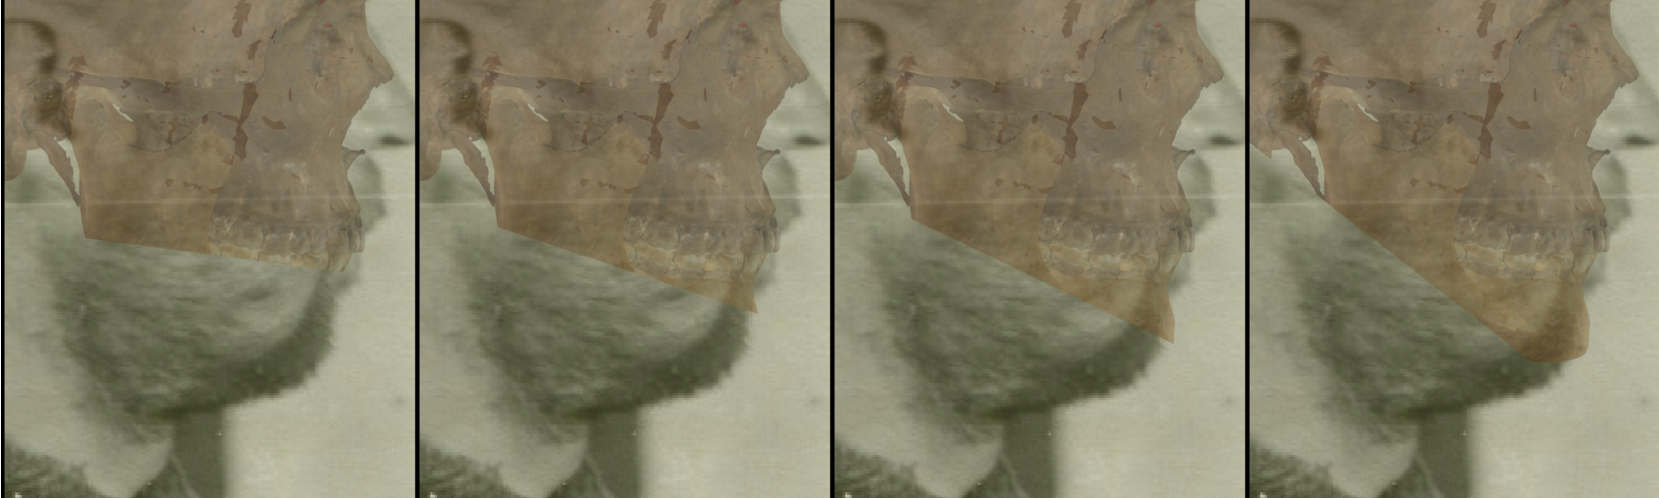 Ejemplo de un solapamiento negativo en vista lateral en la que se evalúa el contorno del mentón con Skeleton·ID mediante las herramientas de transparencia y barrido, mostrando que el contorno de la barbilla en la foto no sigue el contorno del mentón en el cráneo de manera consistente. La herramienta de barrido se ha utilizado para mostrar un gradiente de derecha a izquierda del contorno del mentón